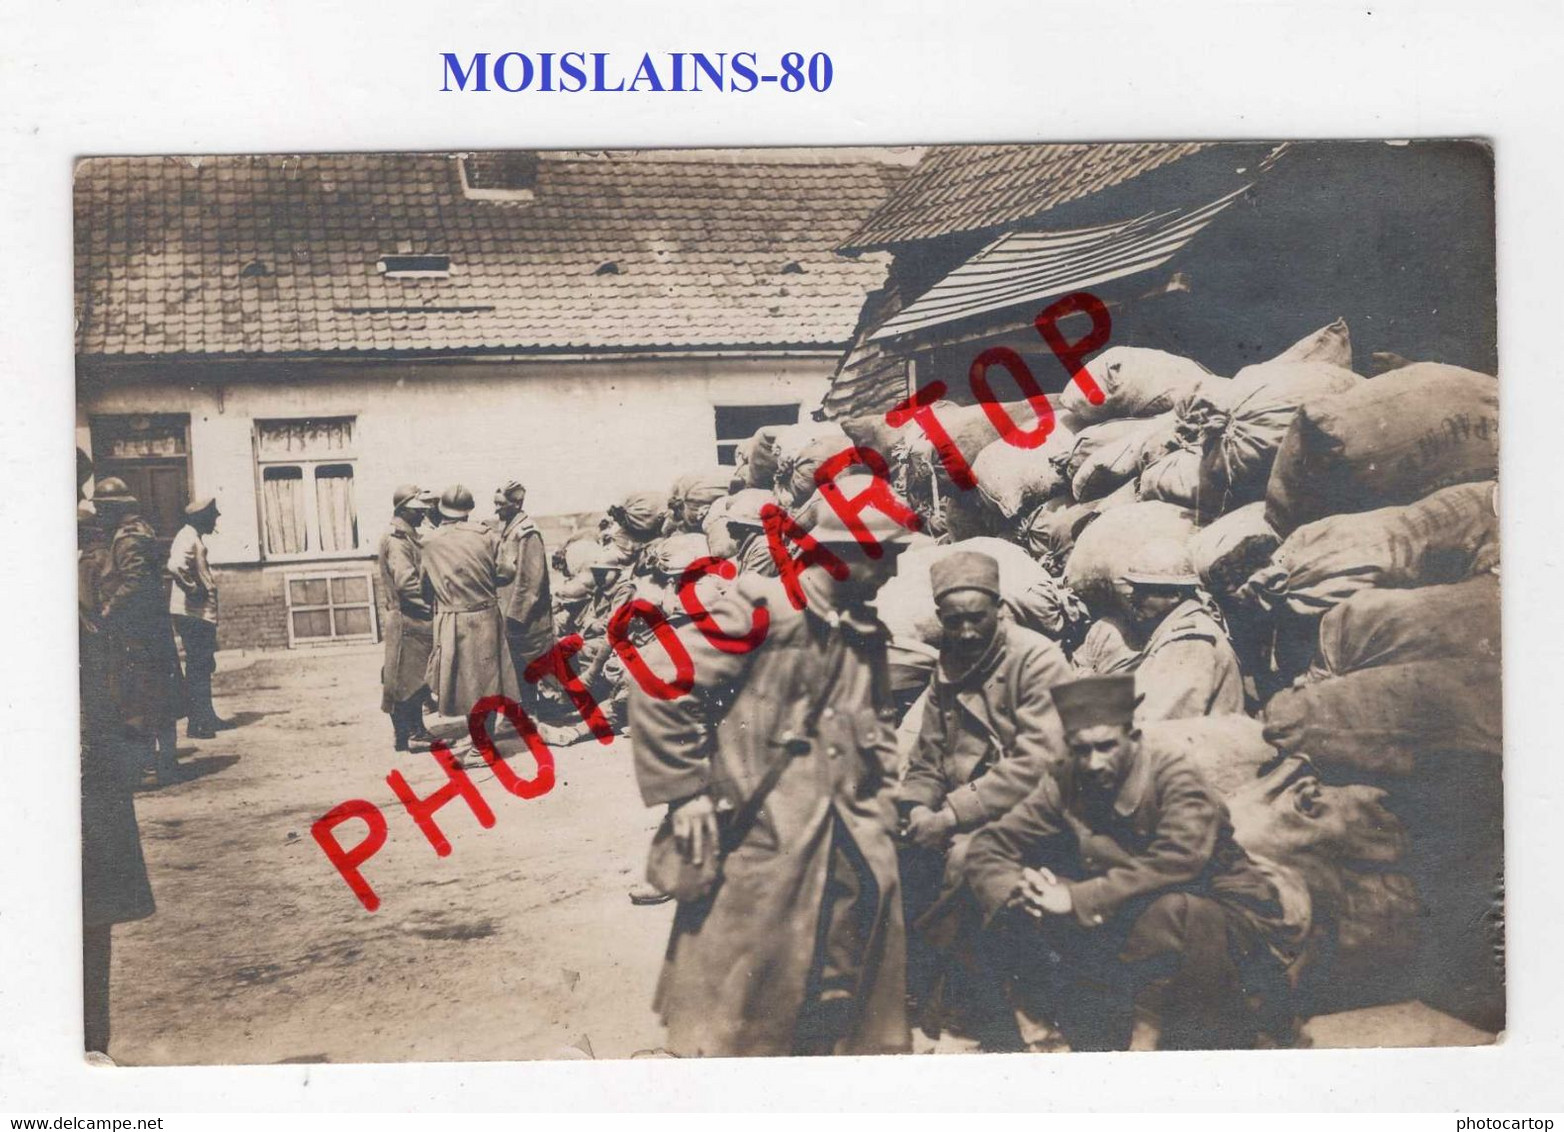 MOISLAINS-Prisonniers Francais Et Senegalais-30-7-1916-CARTE PHOTO Allemande-GUERRE 14-18-1 WK-France-80-Militaria - Moislains